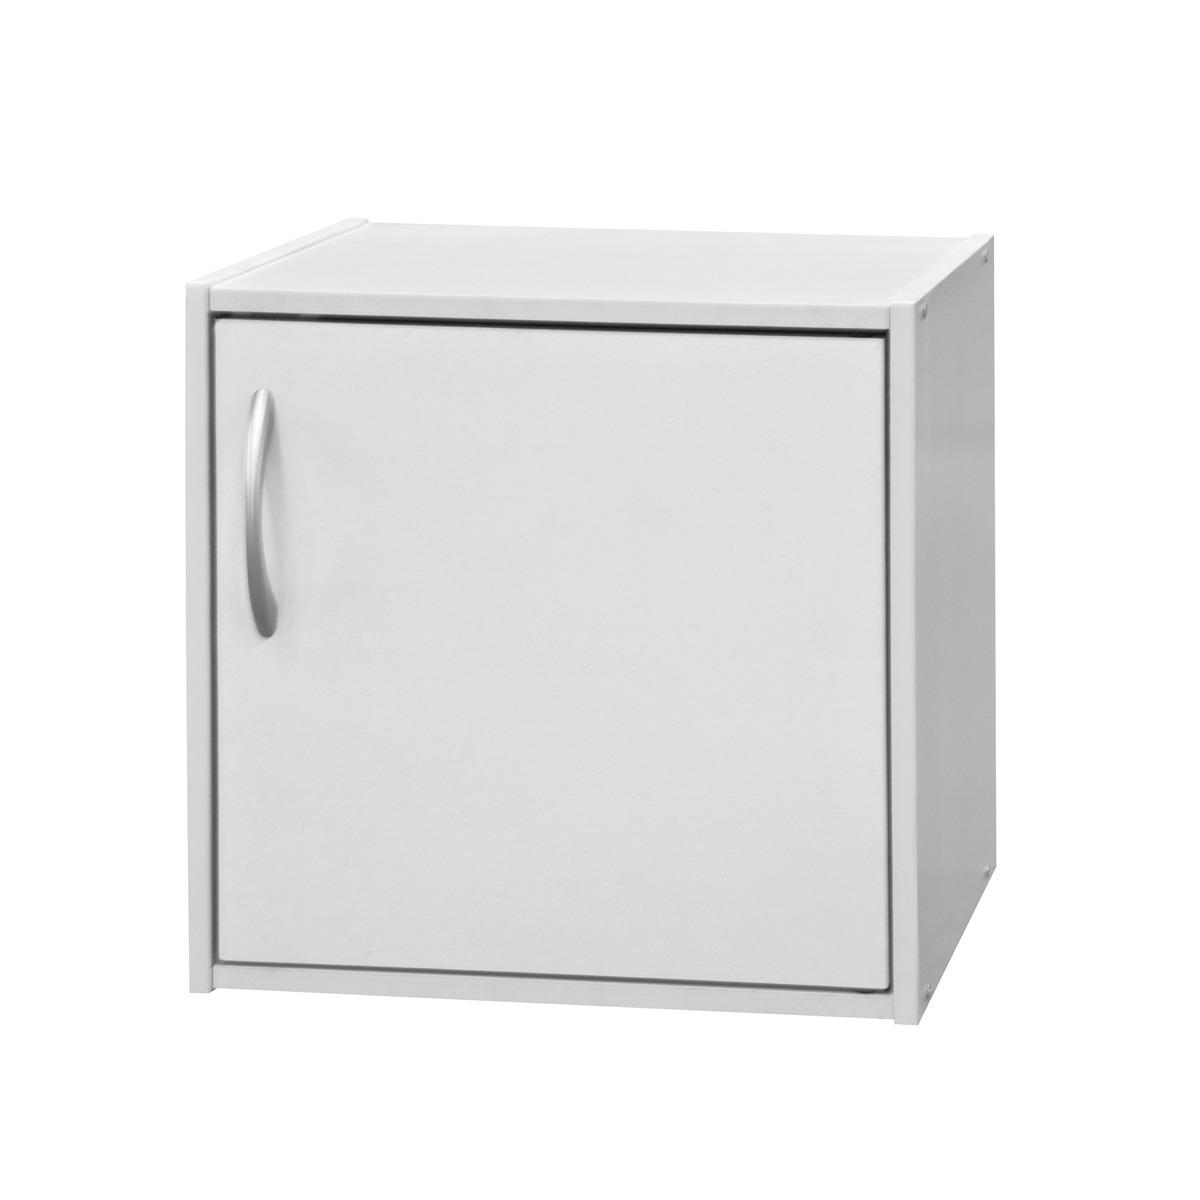 Cube de rangement 1 porte - 36 x 29,5 x H 36 cm - Blanc